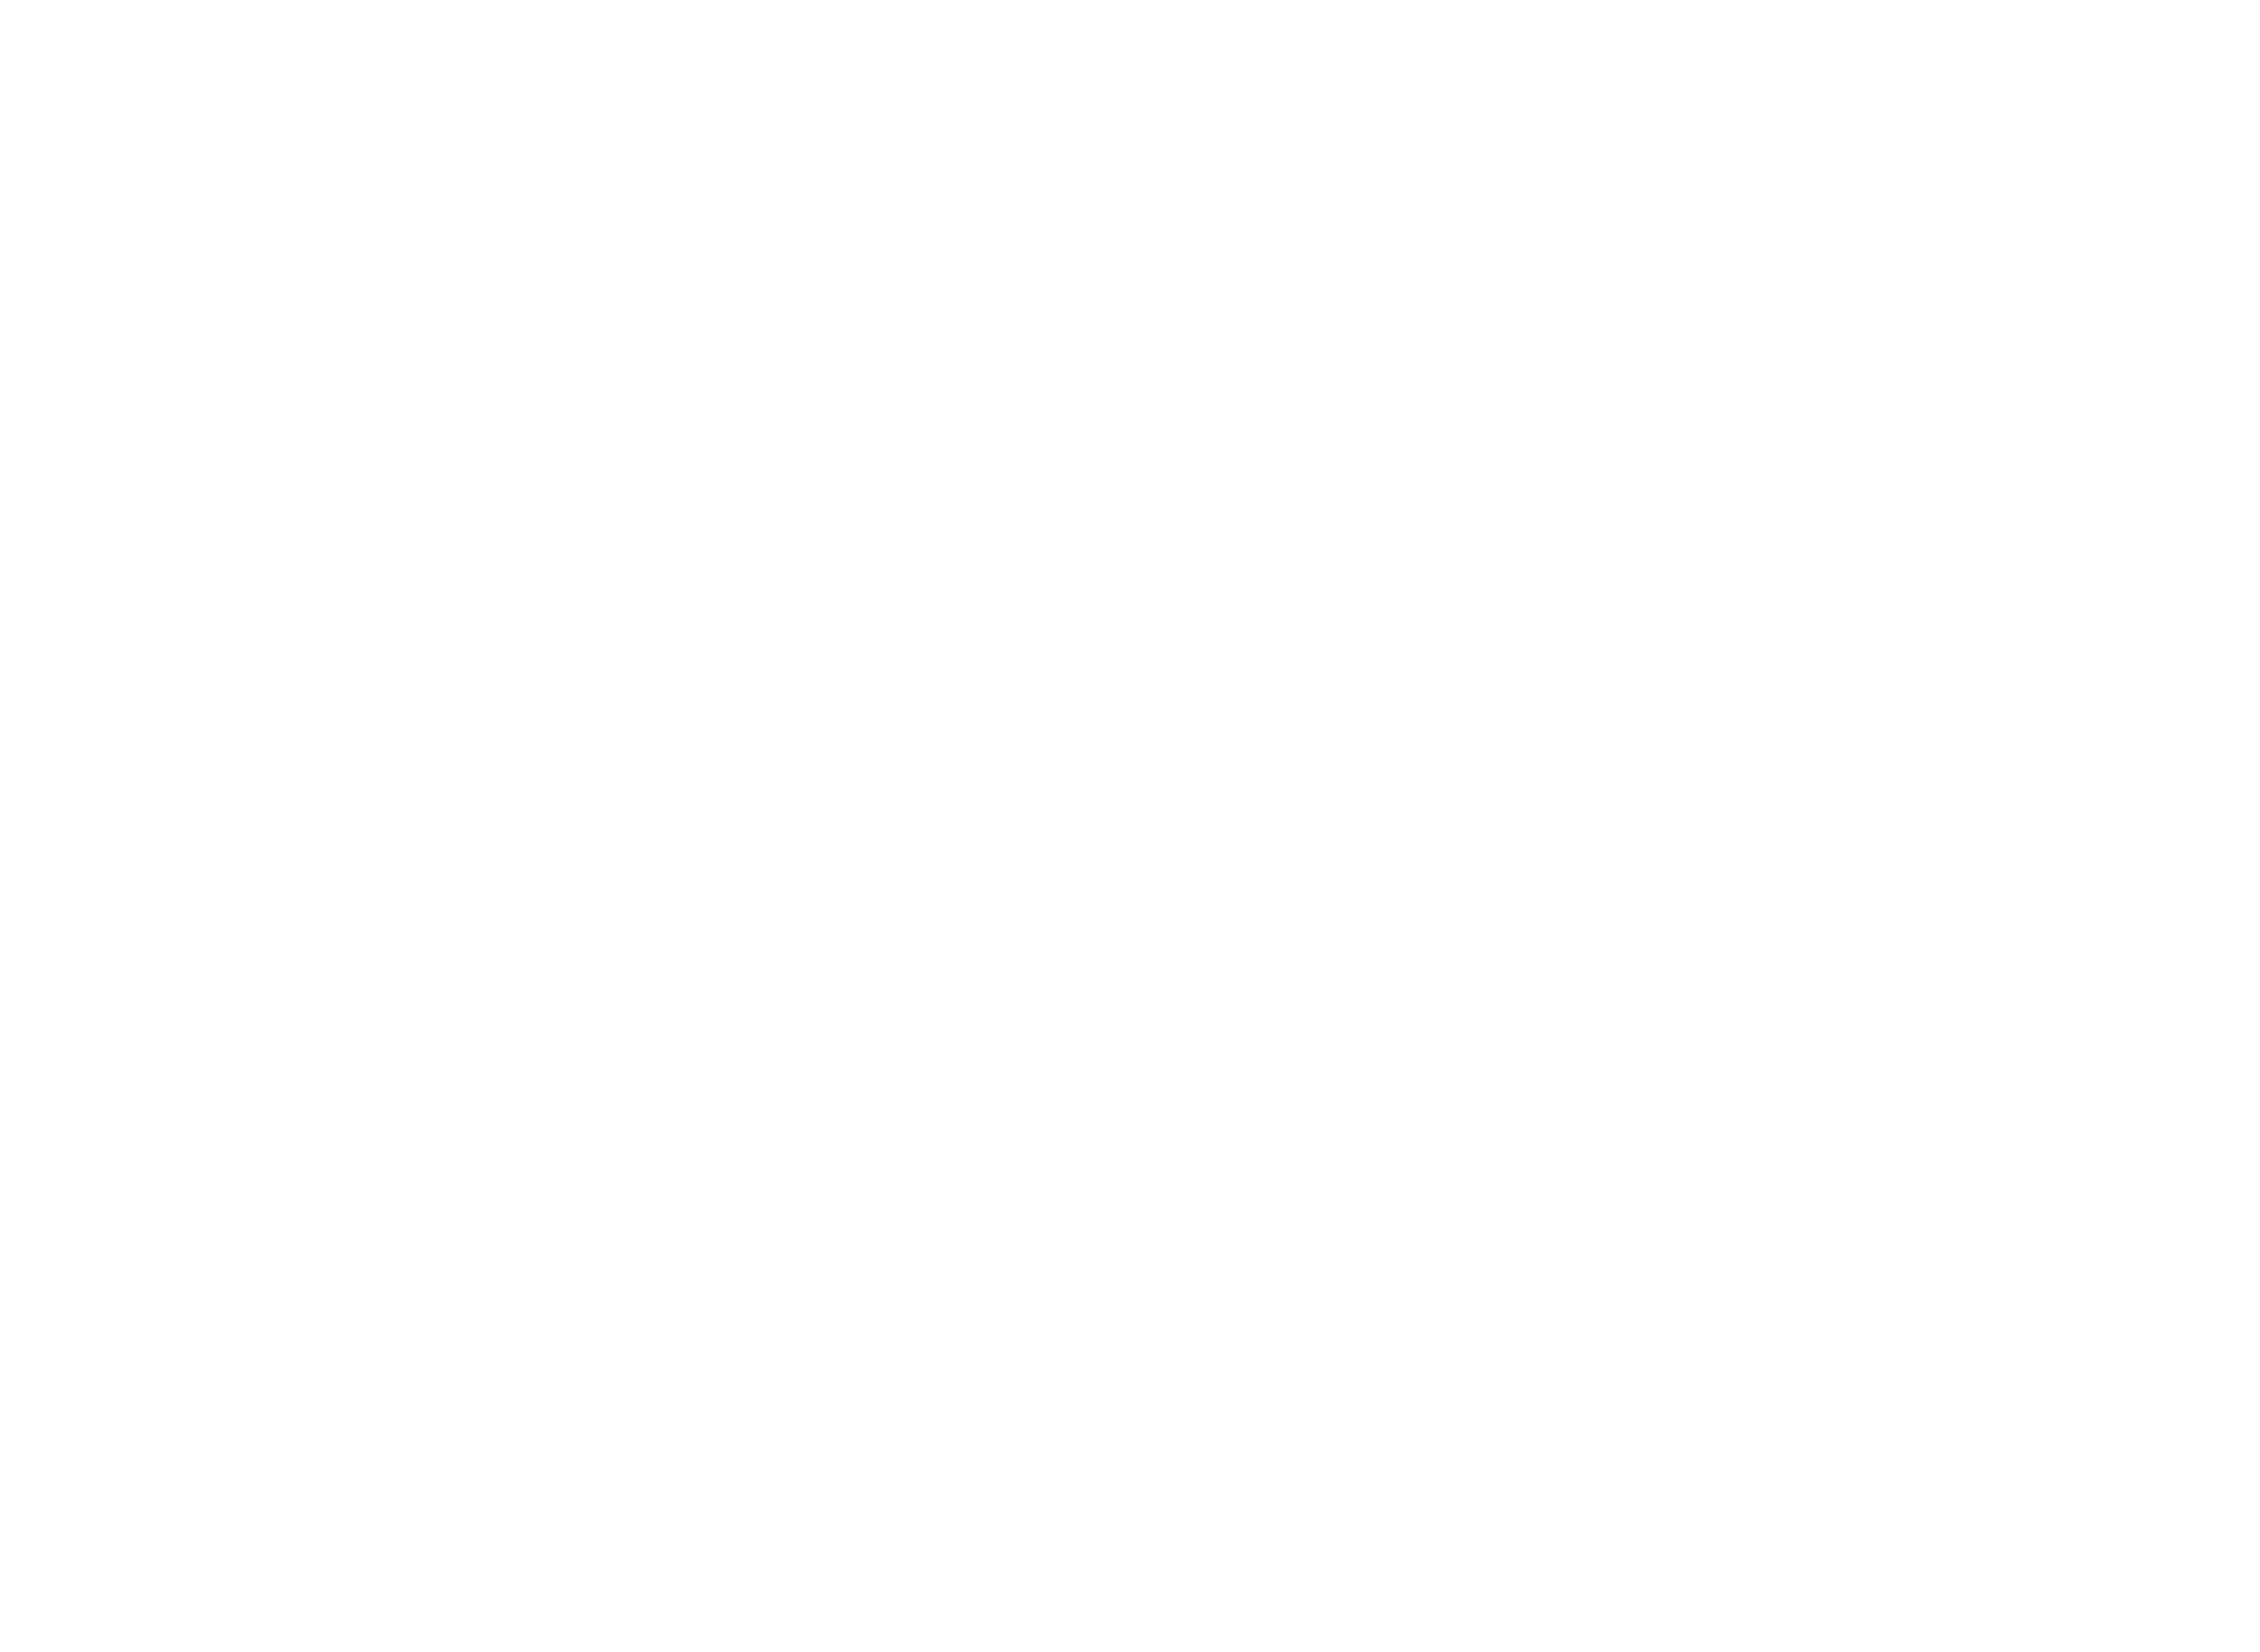 HVX